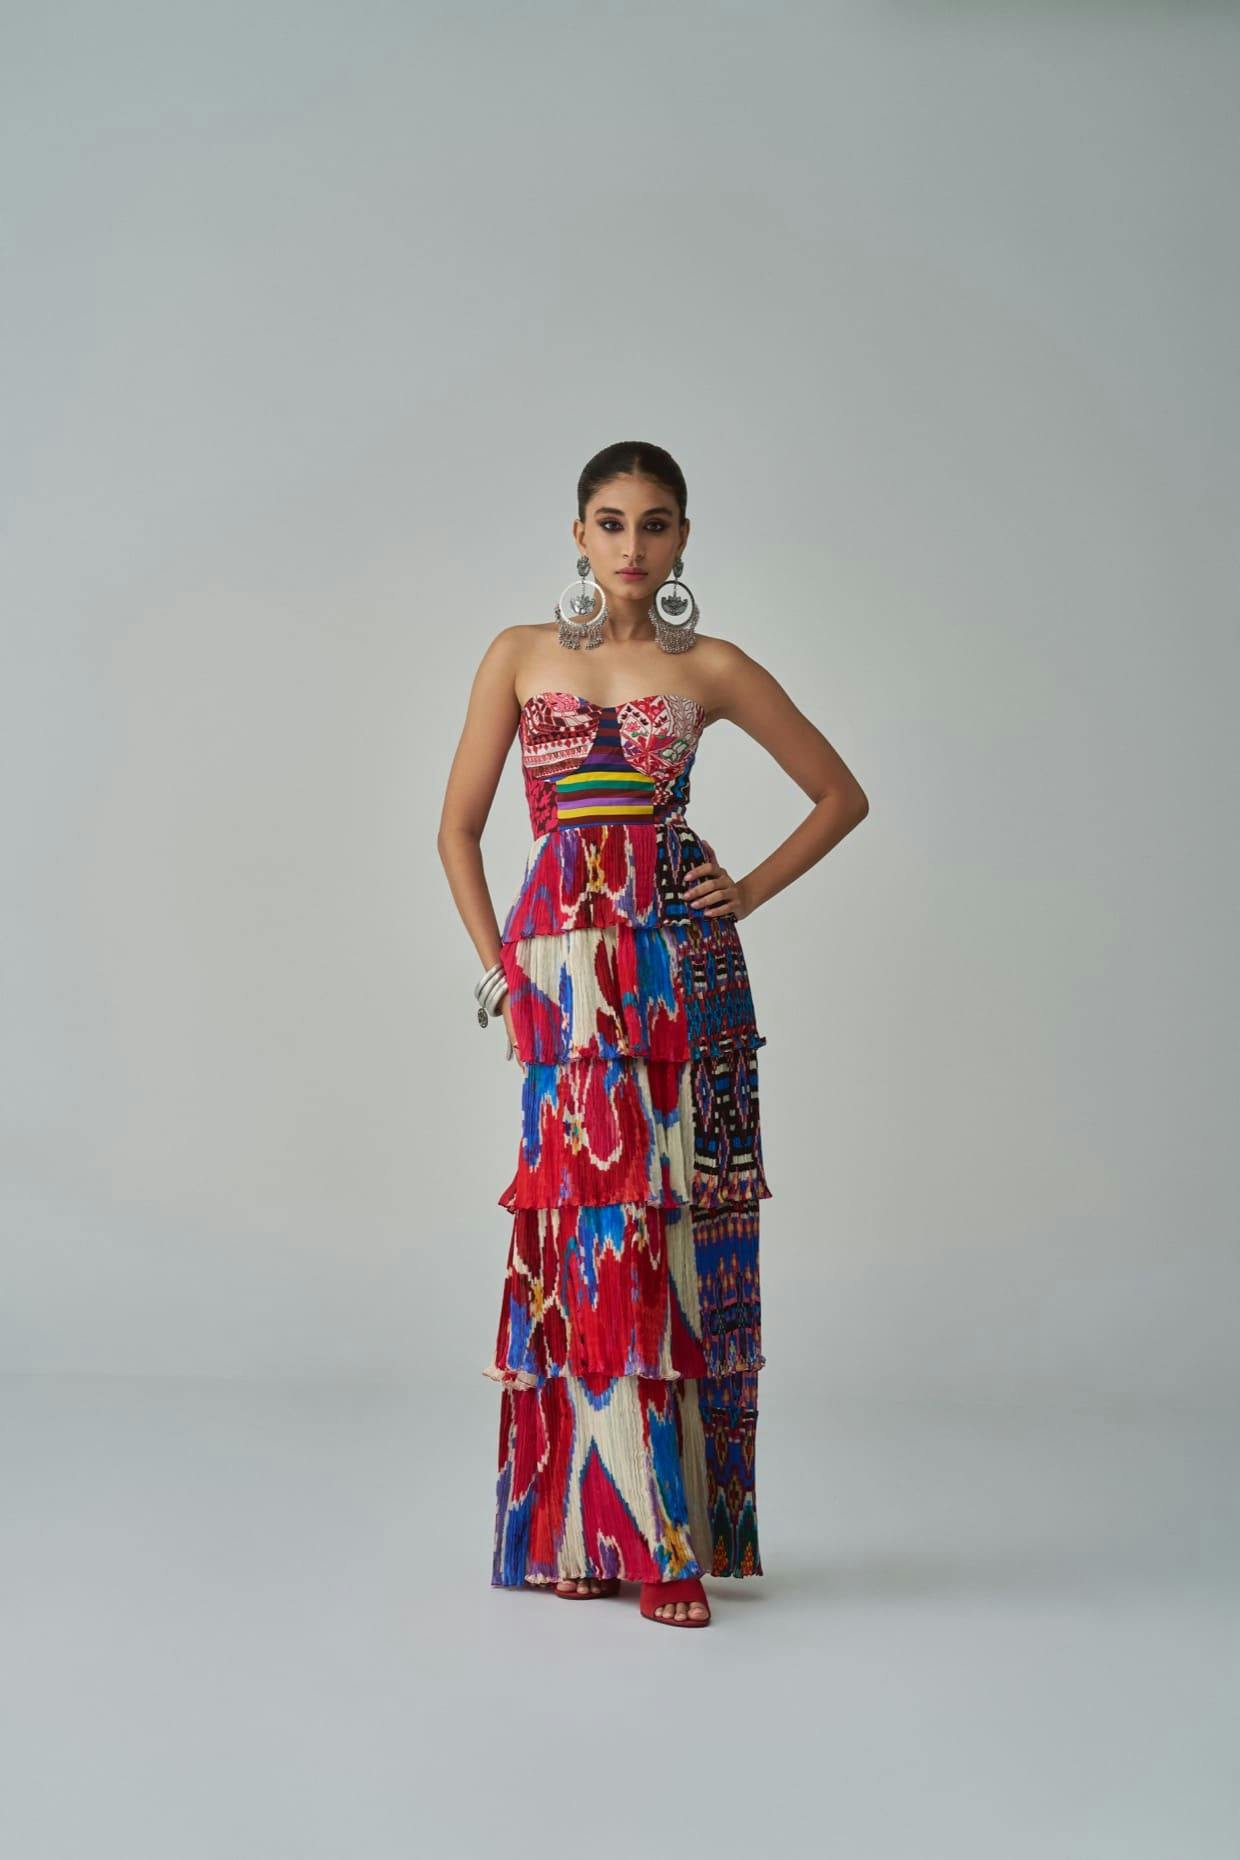 HELENA DRESS, a product by Saaksha & Kinni 